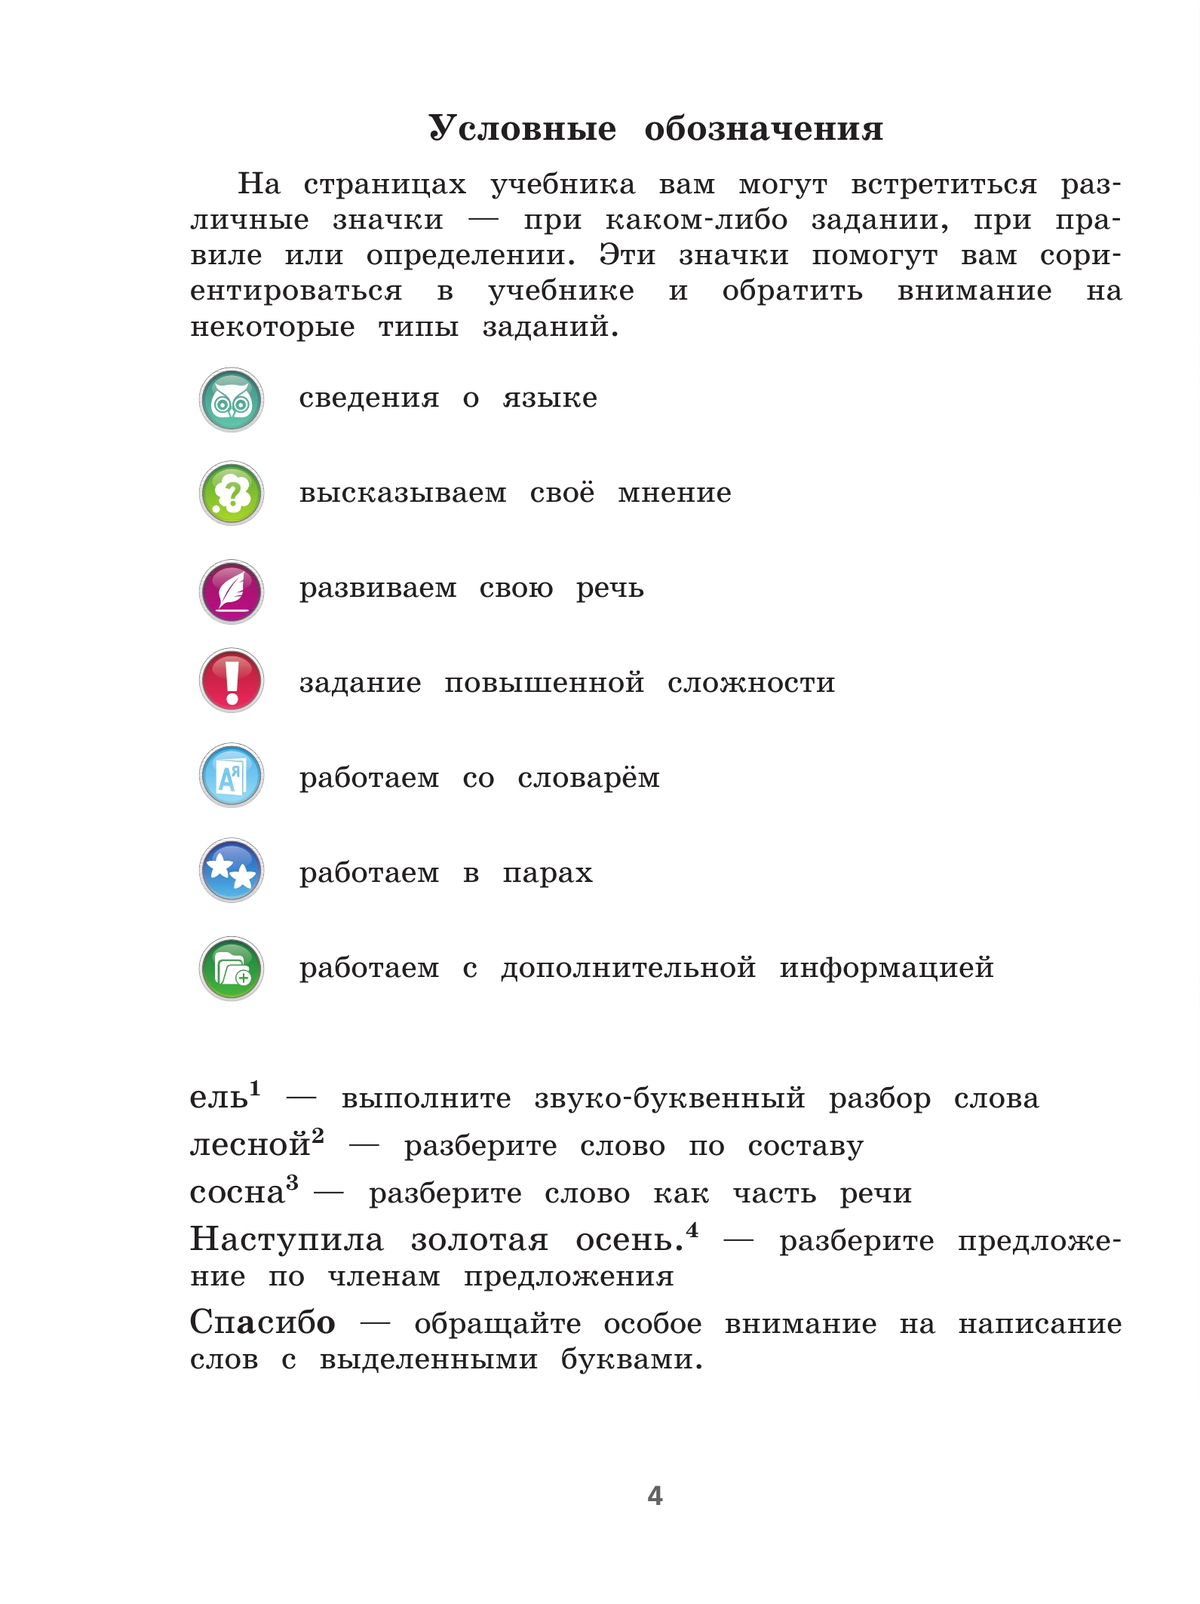 Русский язык. 4 класс. Учебник. В 2 ч. Часть 1 5